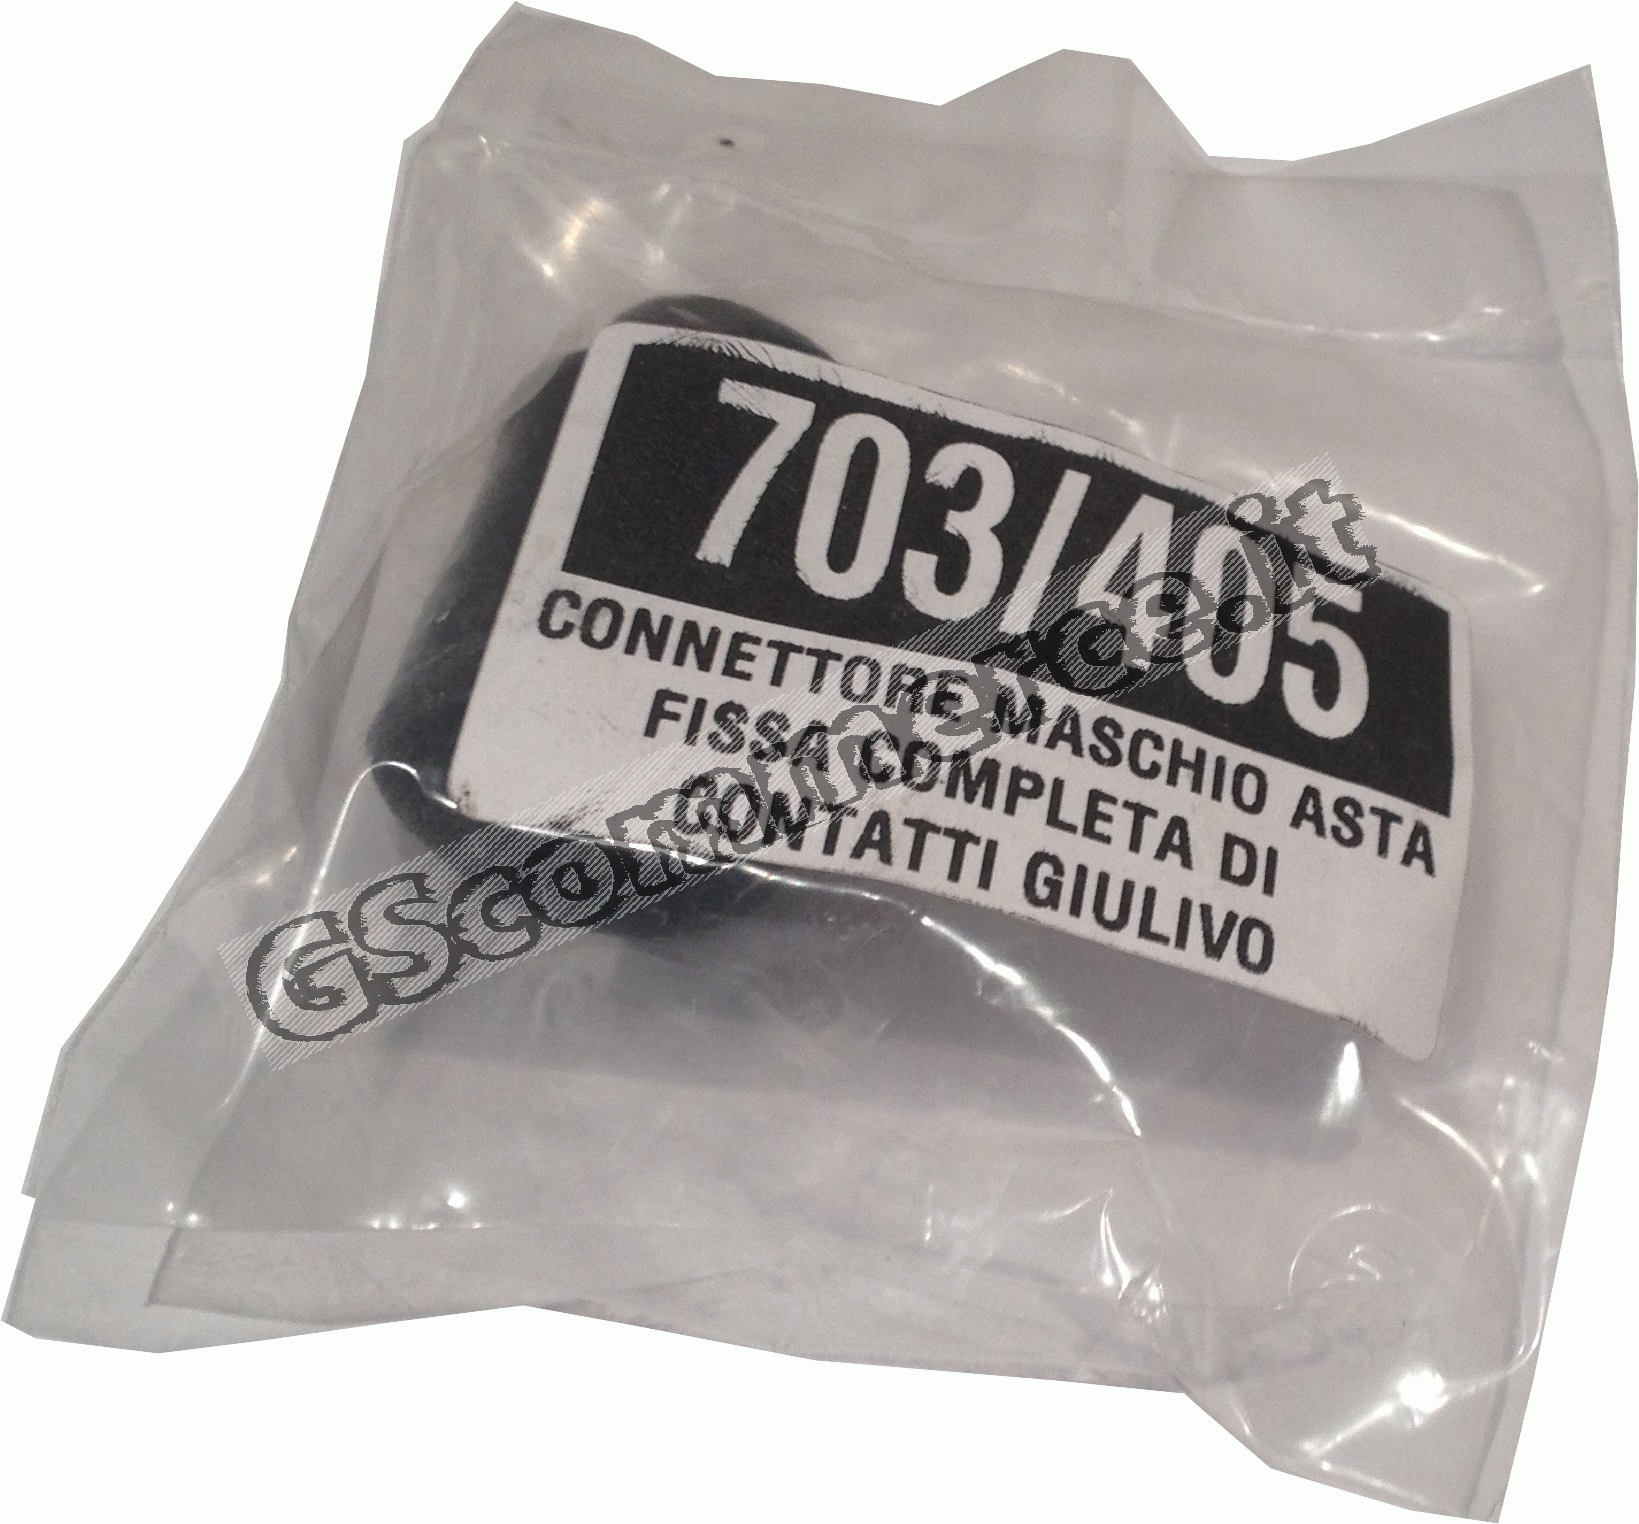 0001834 - CONNETTORE MASCHIO ASTA PER GIULIVO 703 